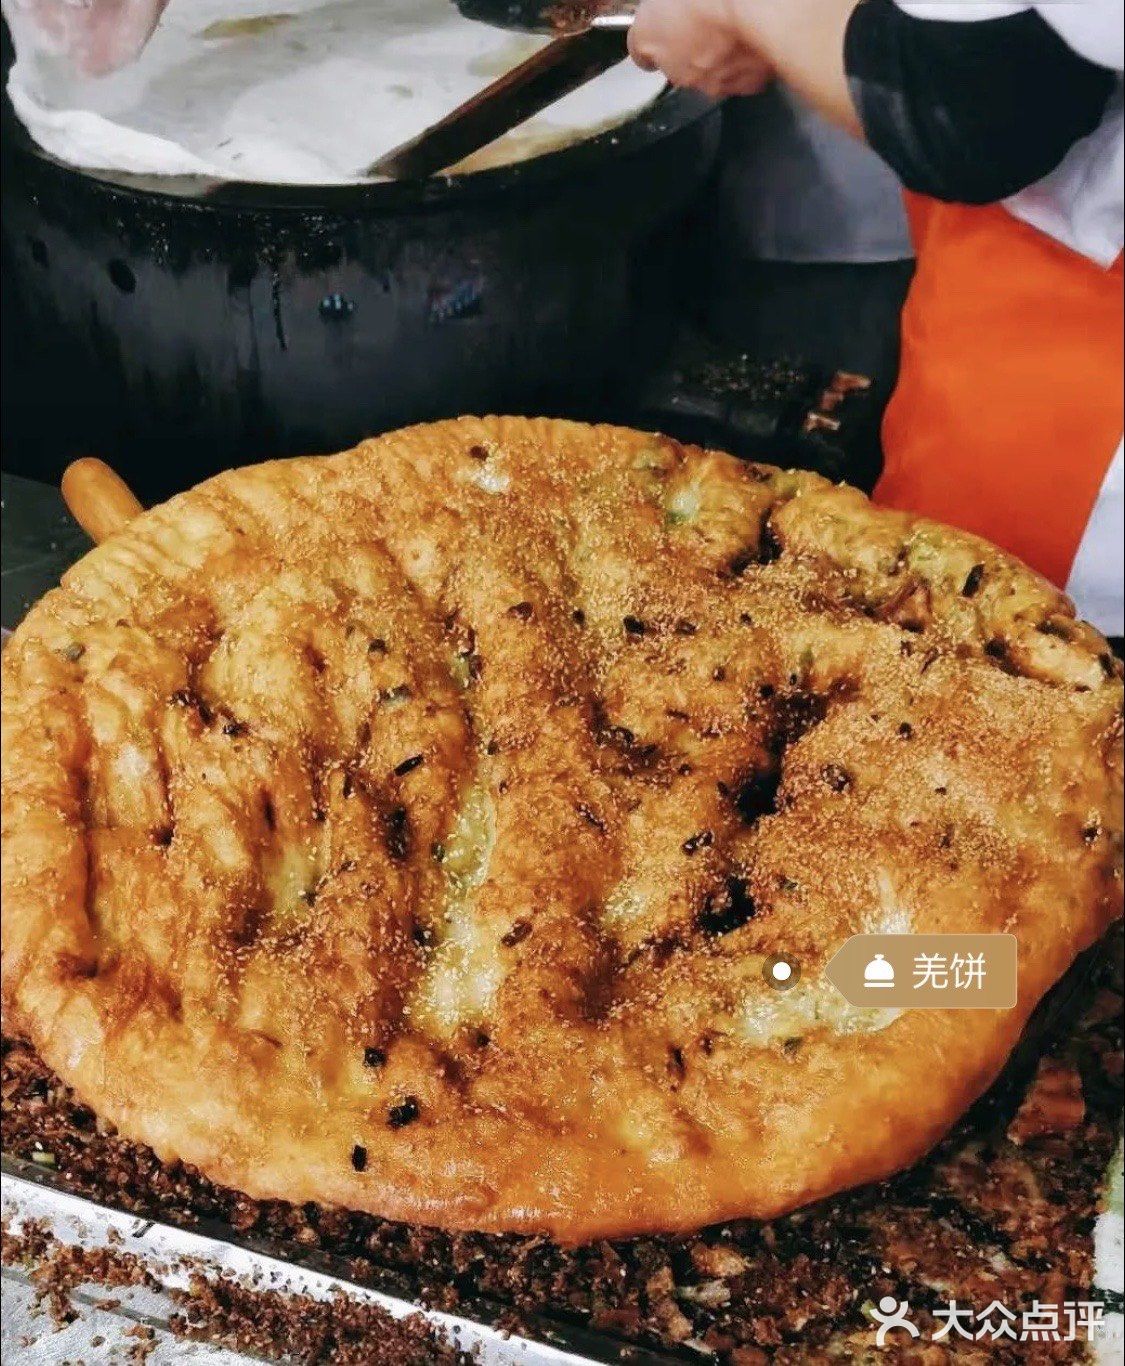 来上海怎么能不吃一口潘记羌饼的羌饼,油煎饼呢?